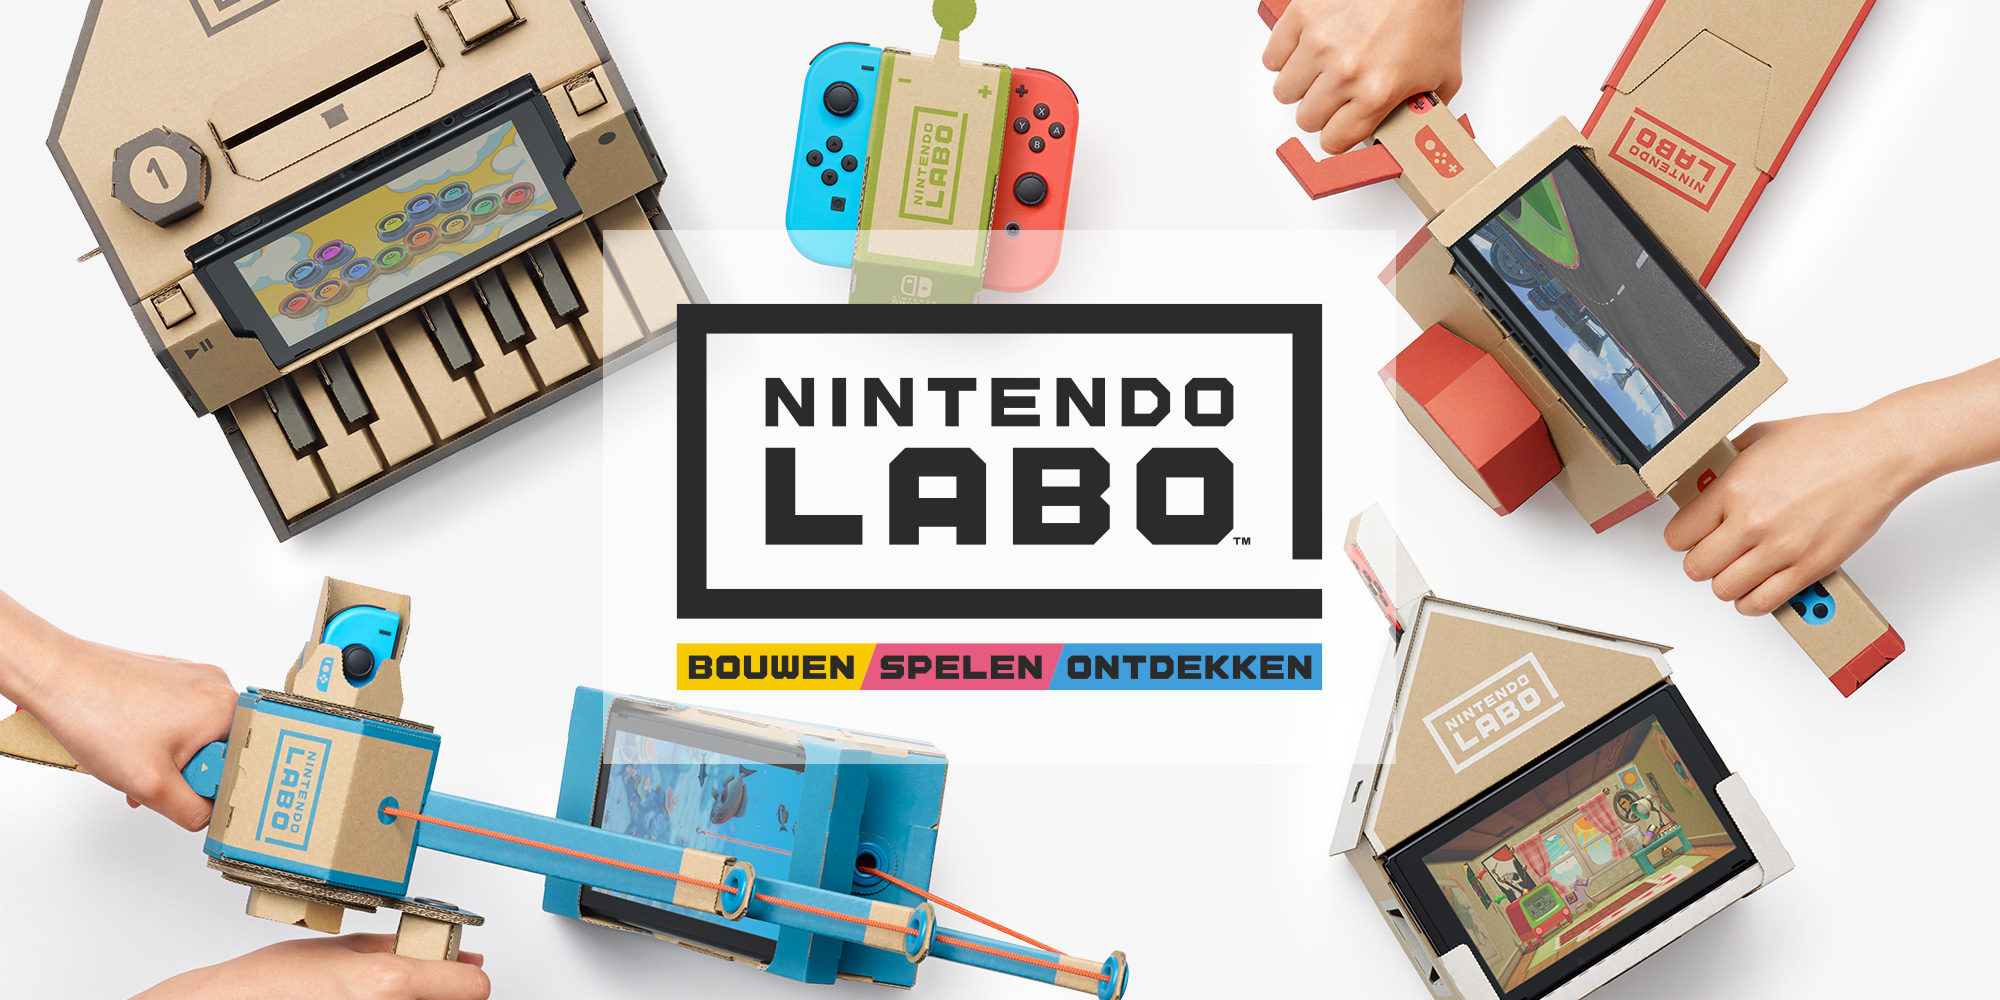 Bouwen, spelen en ontdekken! Nintendo Labo biedt leuke en interactieve ervaringen met de Nintendo Switch